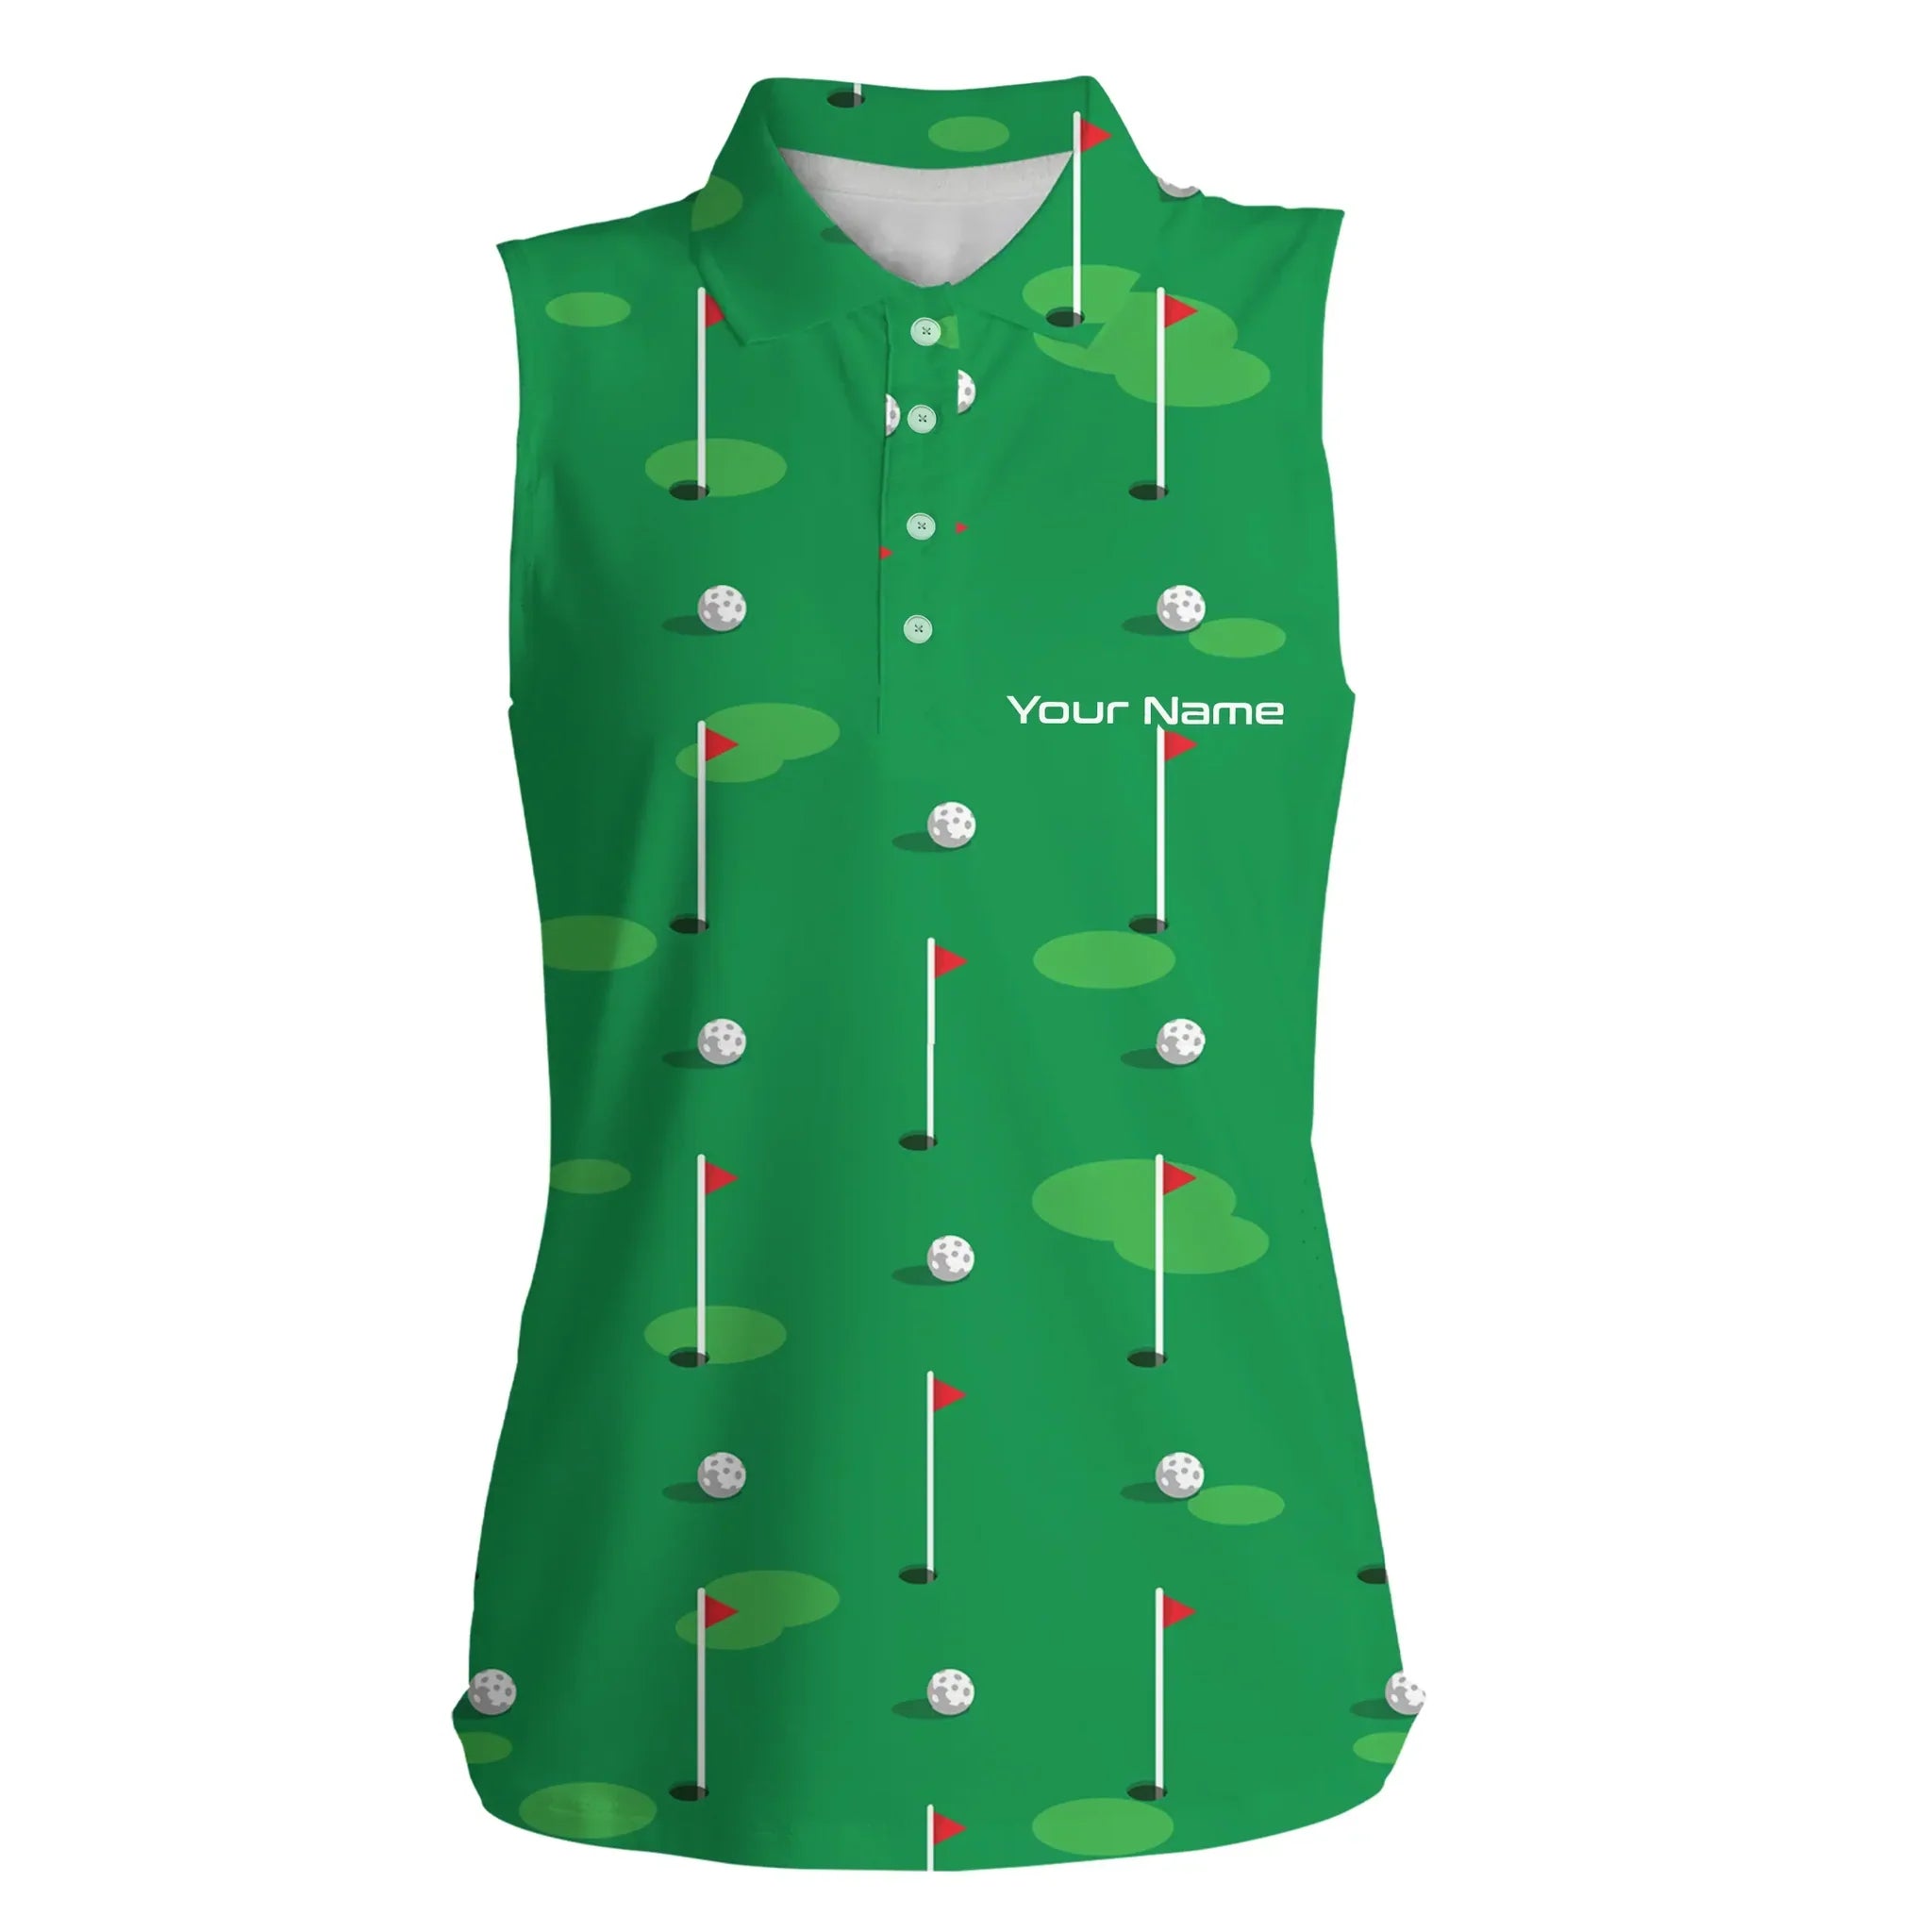 Womens sleeveless polo shirt custom golf flag and balls green Golf Course pattern golf shirt for women